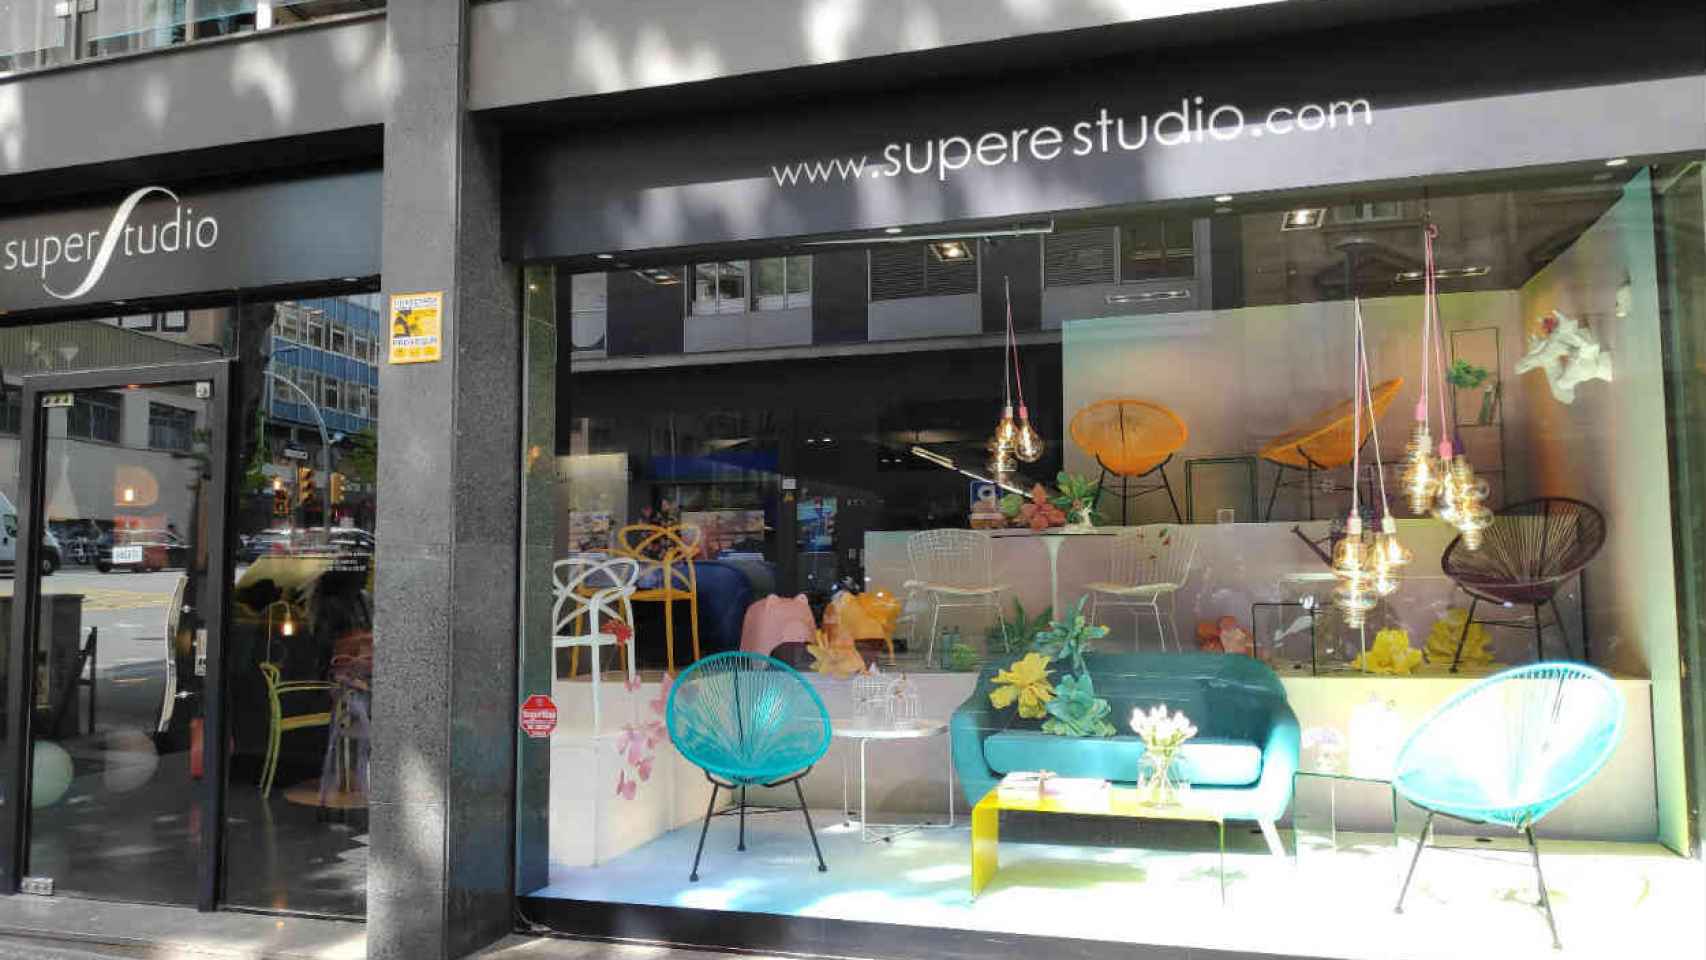 Tienda SuperStudio situada en la calle Aribau de Barcelona / MA